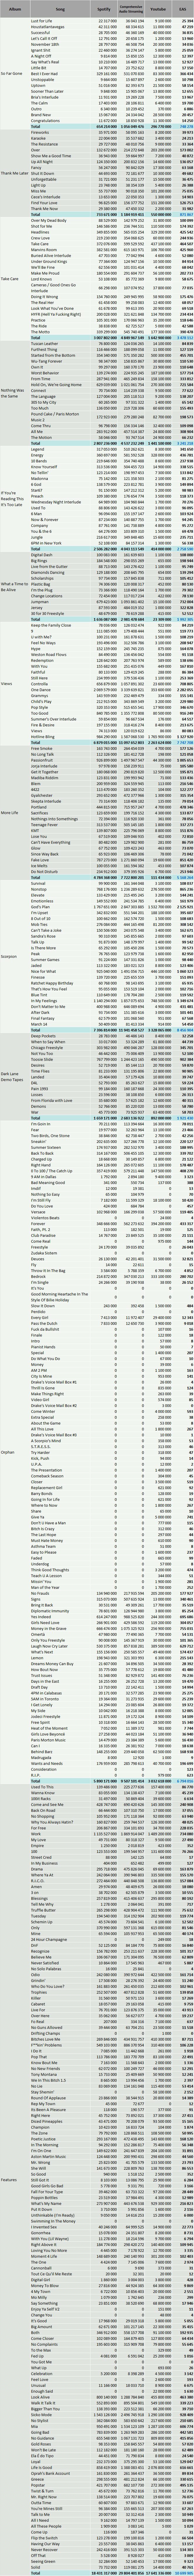 CSPC Drake streaming discography statistics